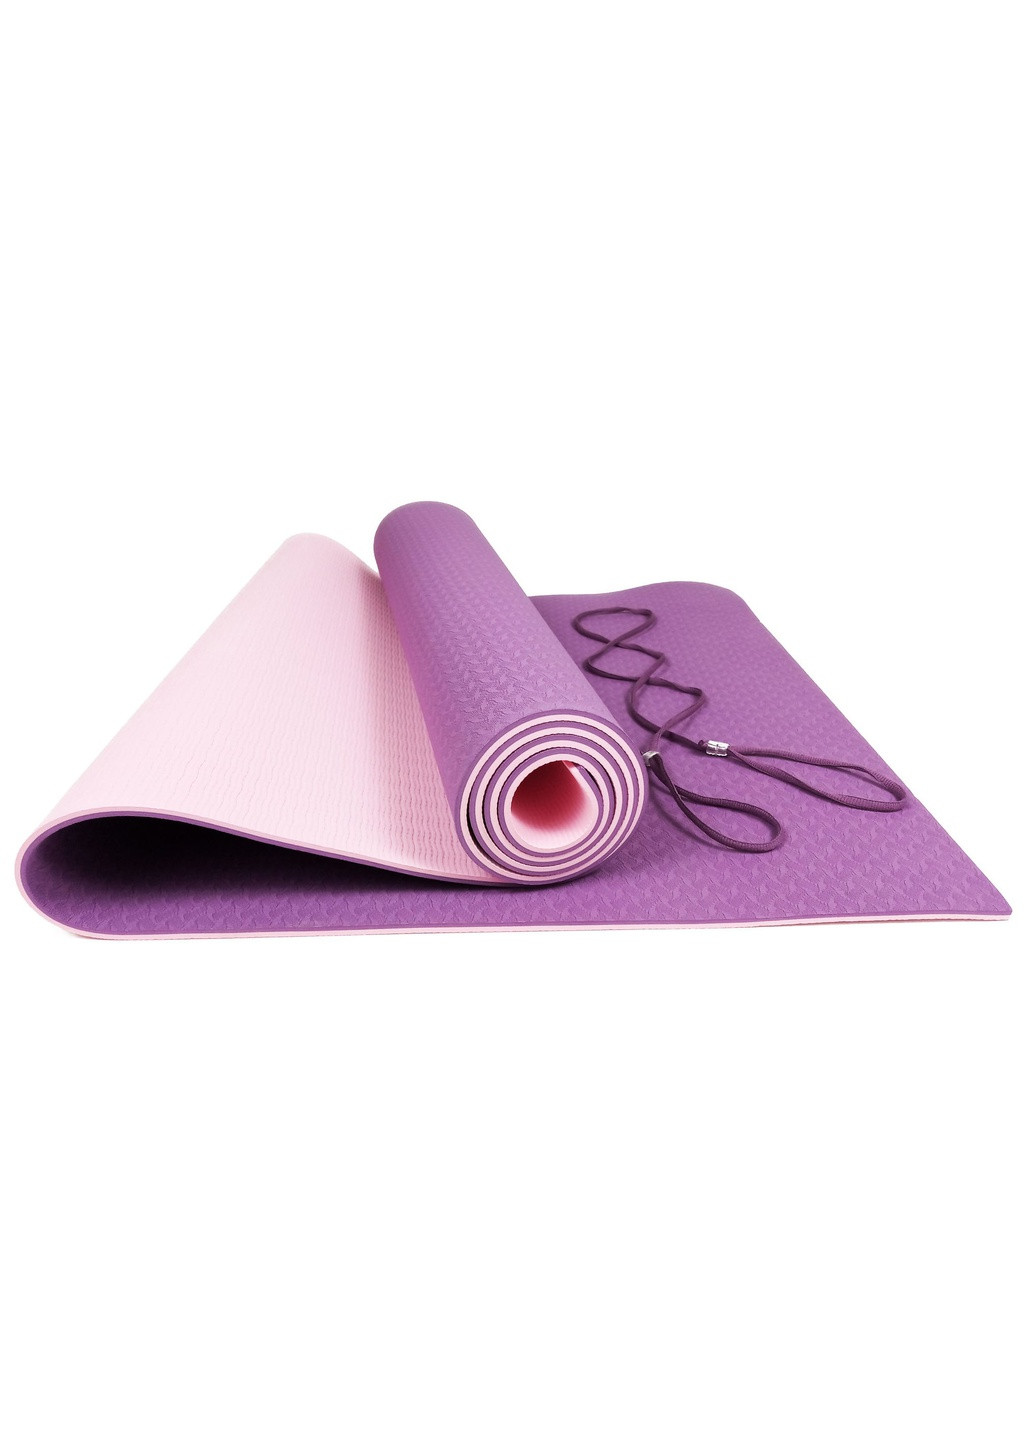 Набор для йоги PRO (EF-YPVP) - коврик для йоги (каремат, йогамат для фитнеса), два блока (кирпича) и ремень (лямка) EasyFit (241229831)